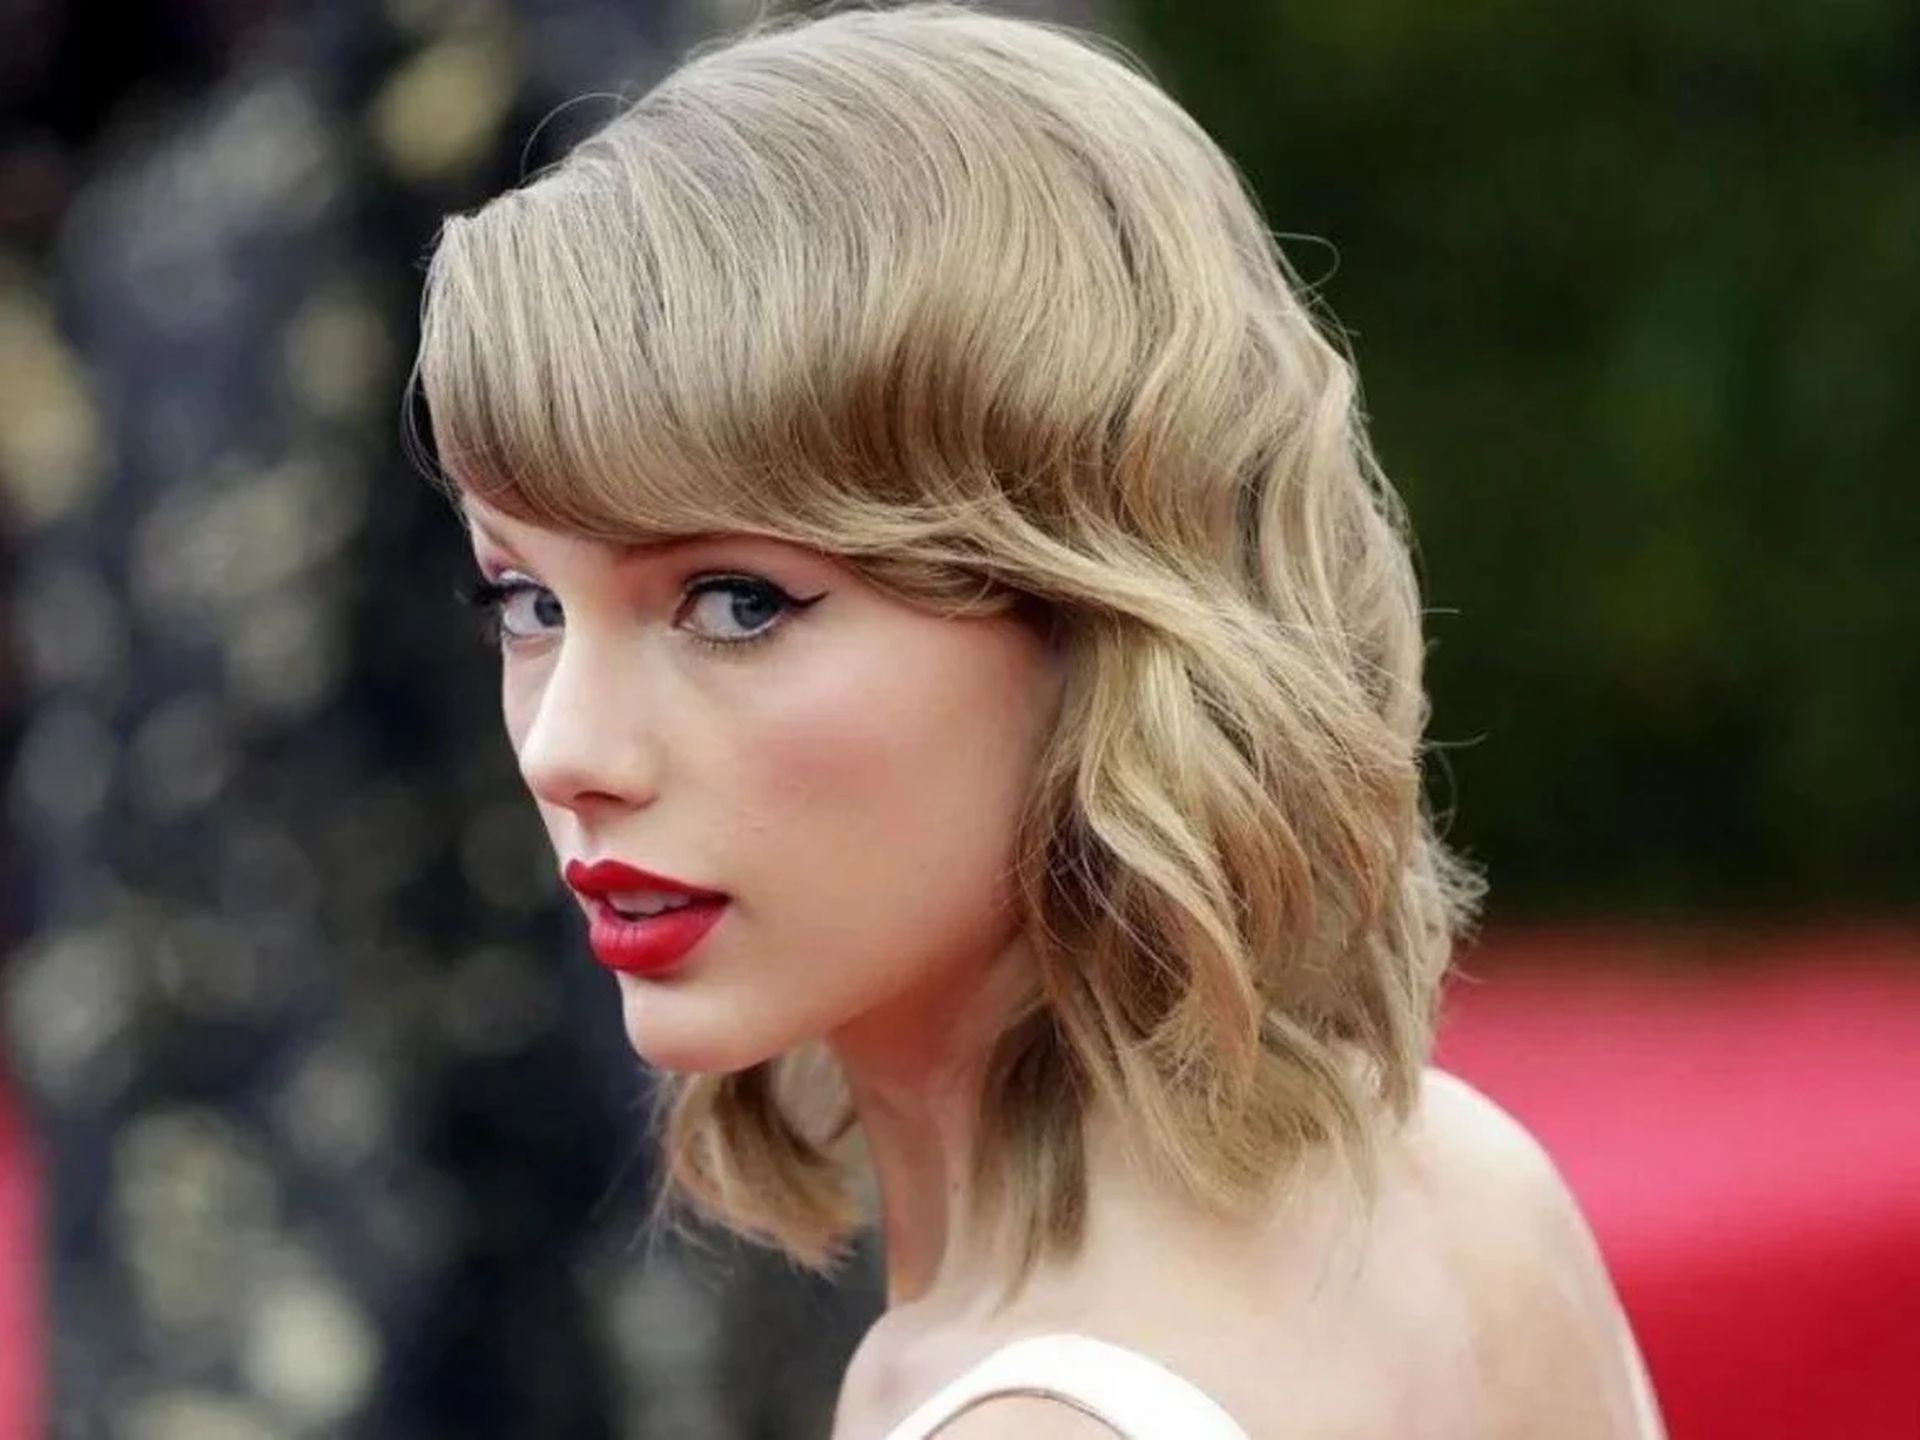 How to enter Taylor Swift presale registration?